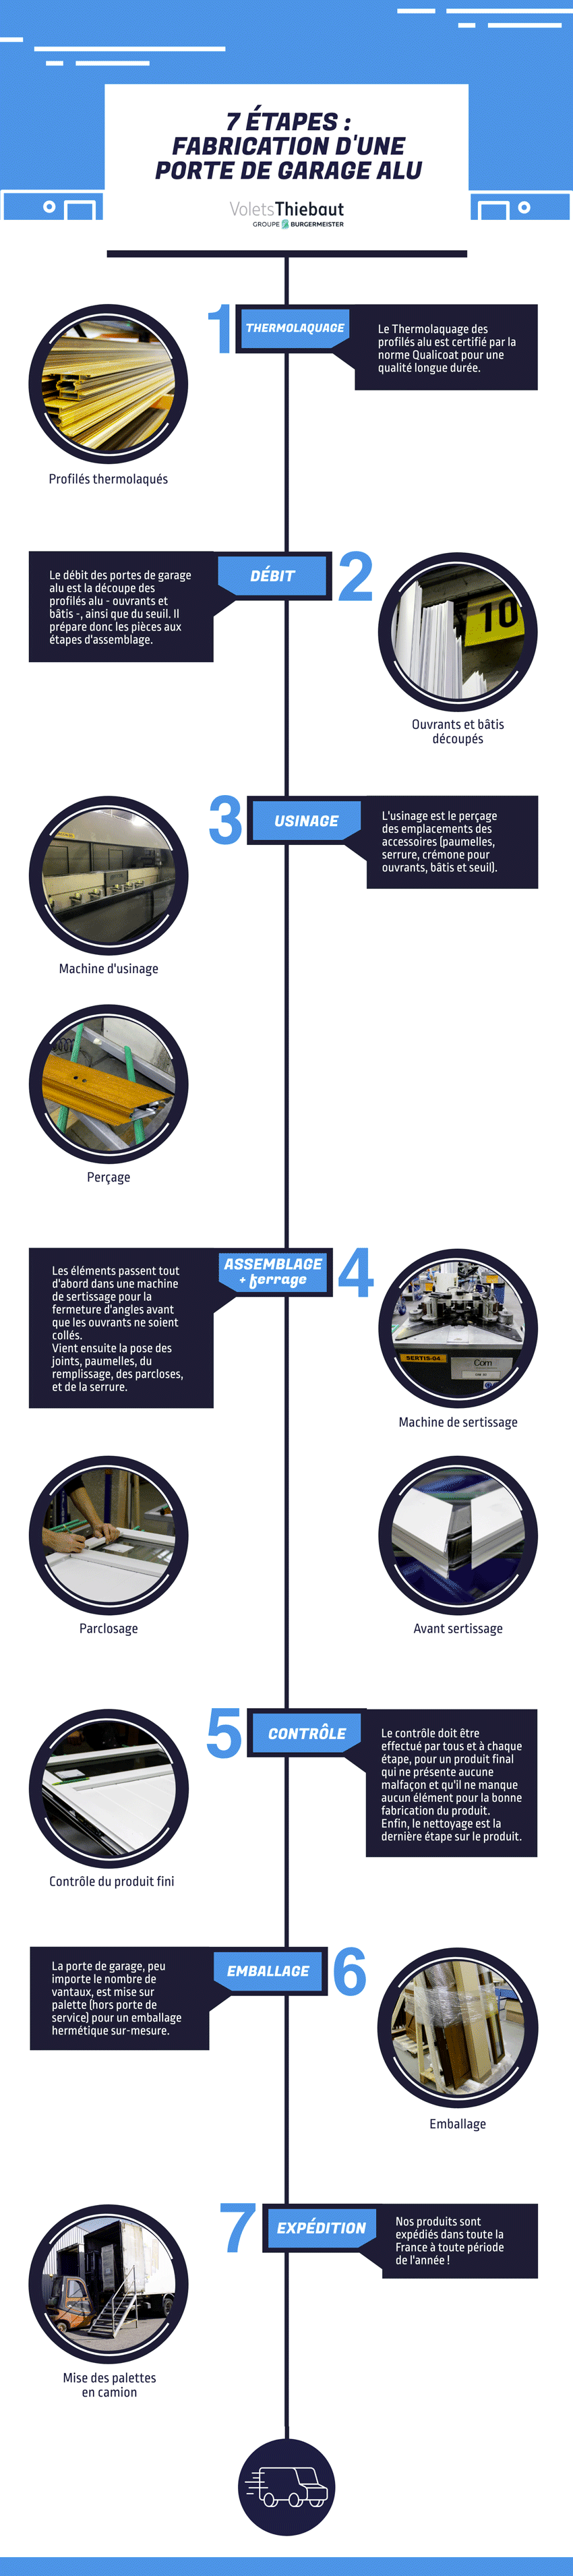 Infographie, fabrication d'une porte de garage alu en 7 étapes